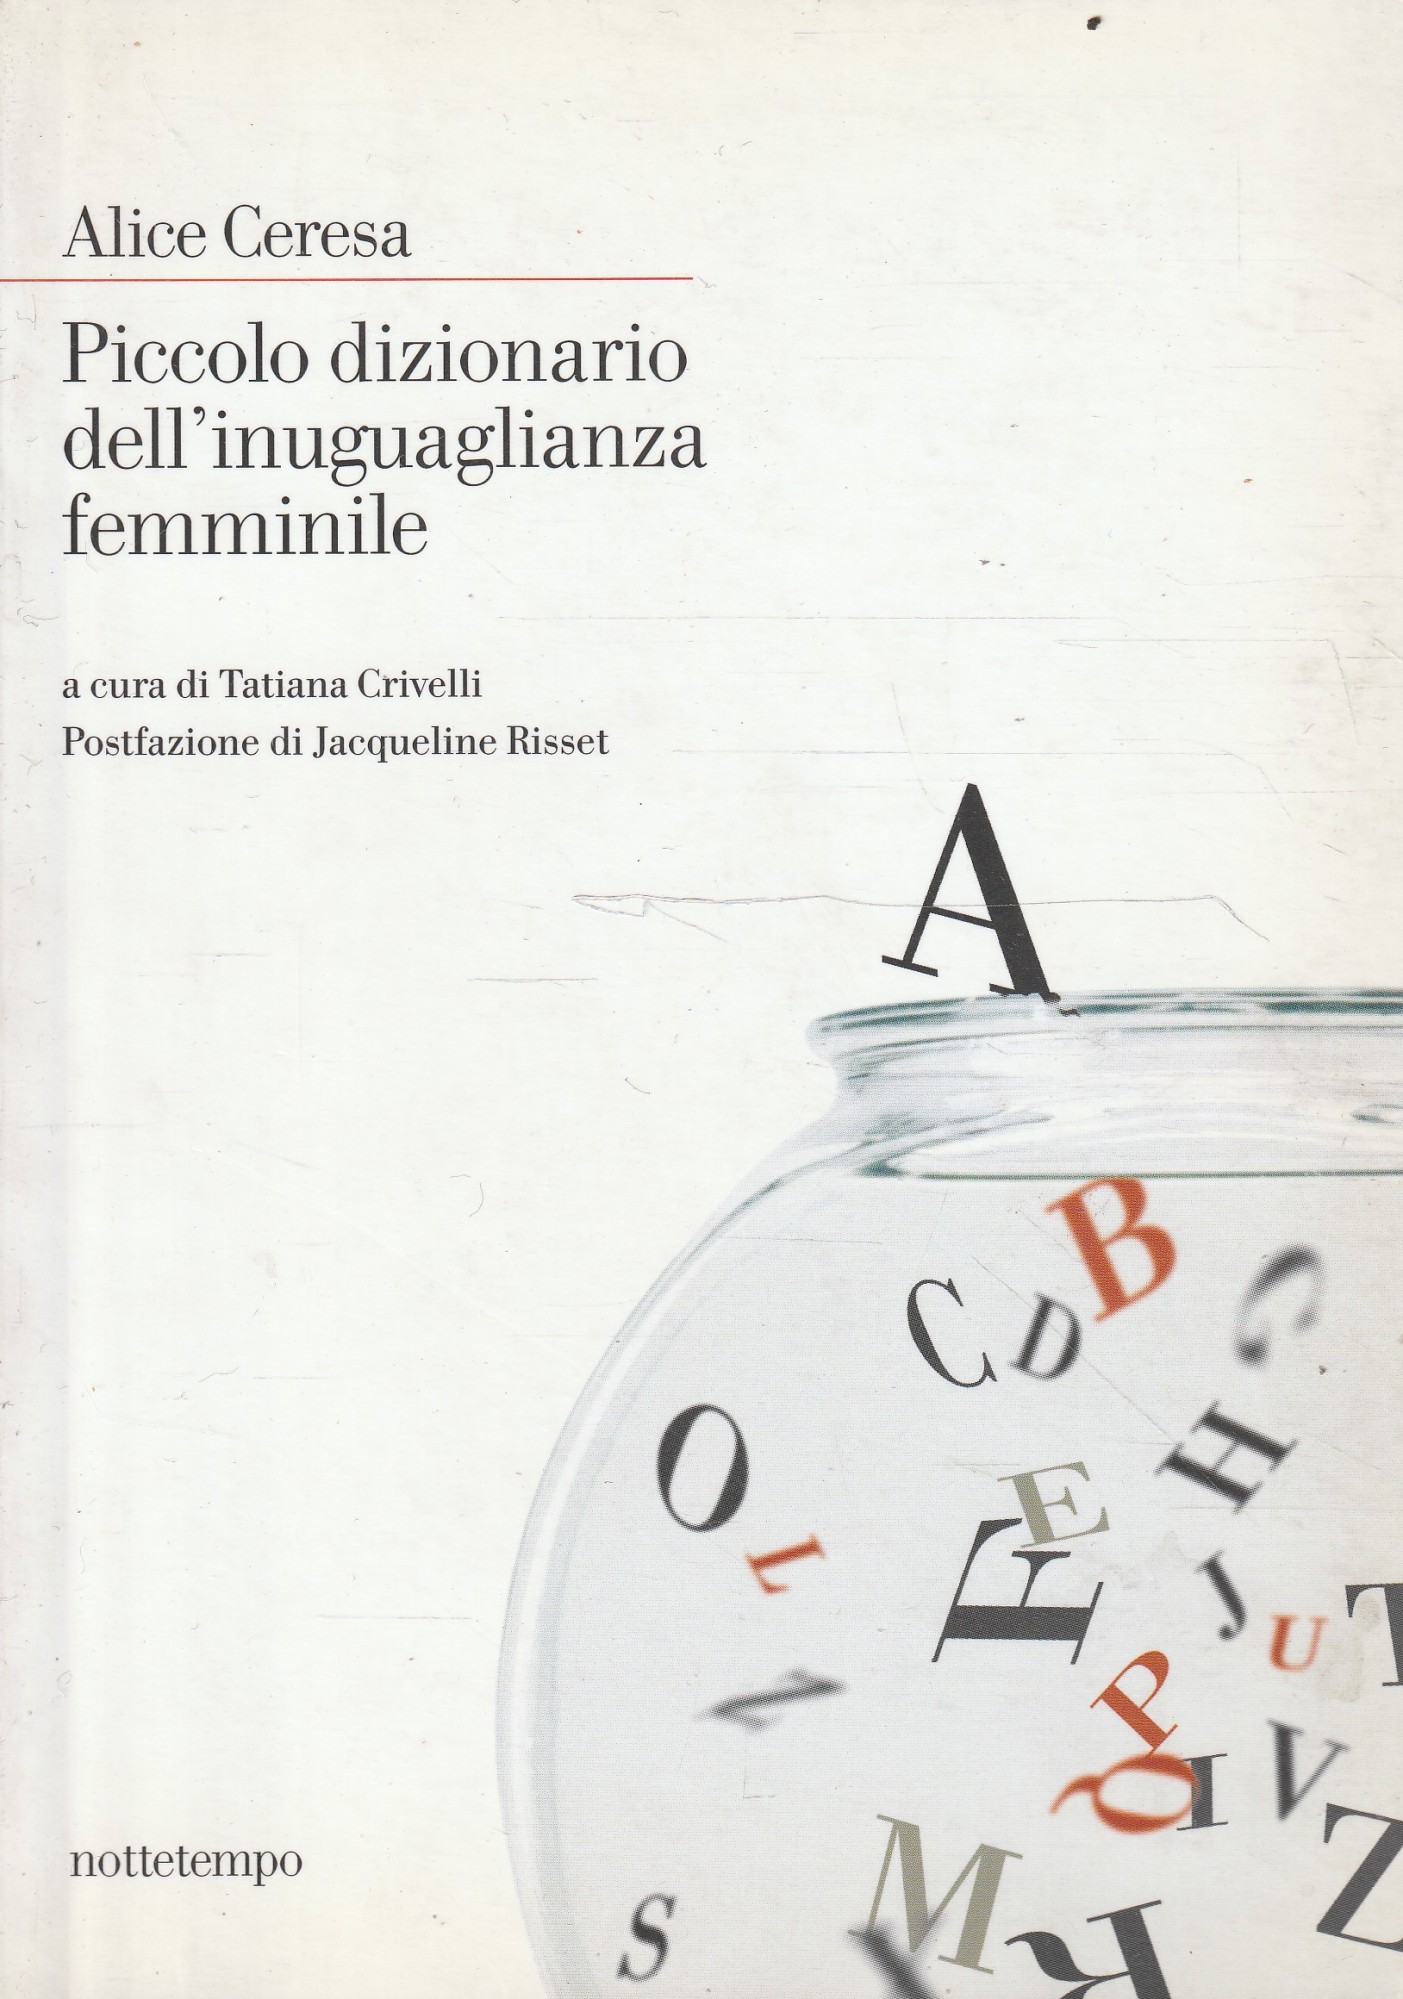 Piccolo dizionario dell'inuguaglianza femminile - Ceresa, Alice - Crivelli, Tatiana